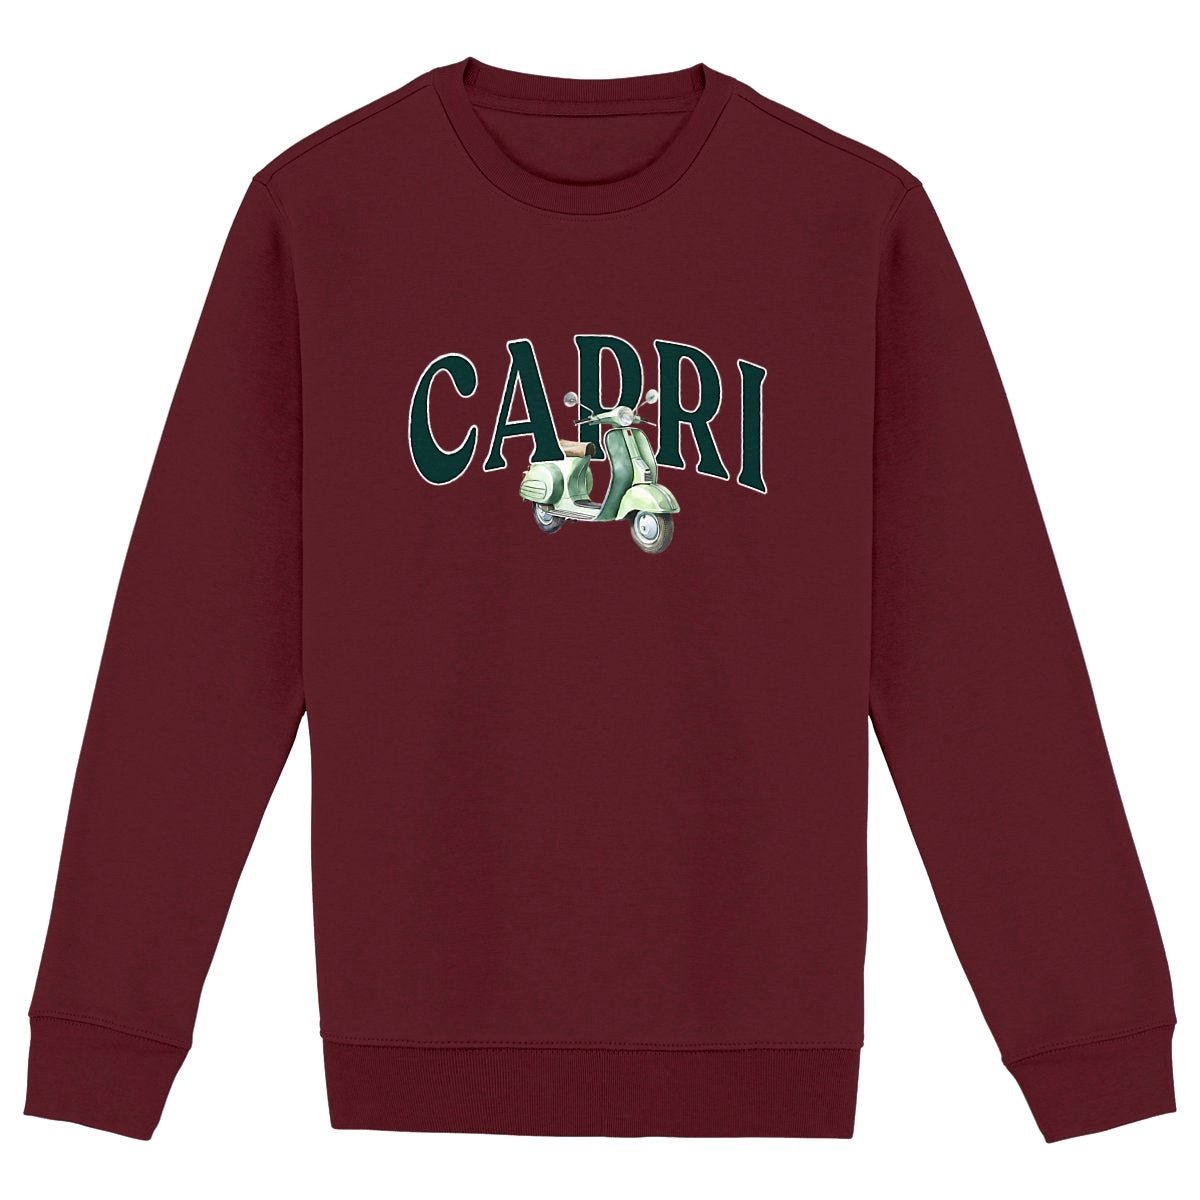 Capri - Organic Sweatshirt - The Refined Spirit